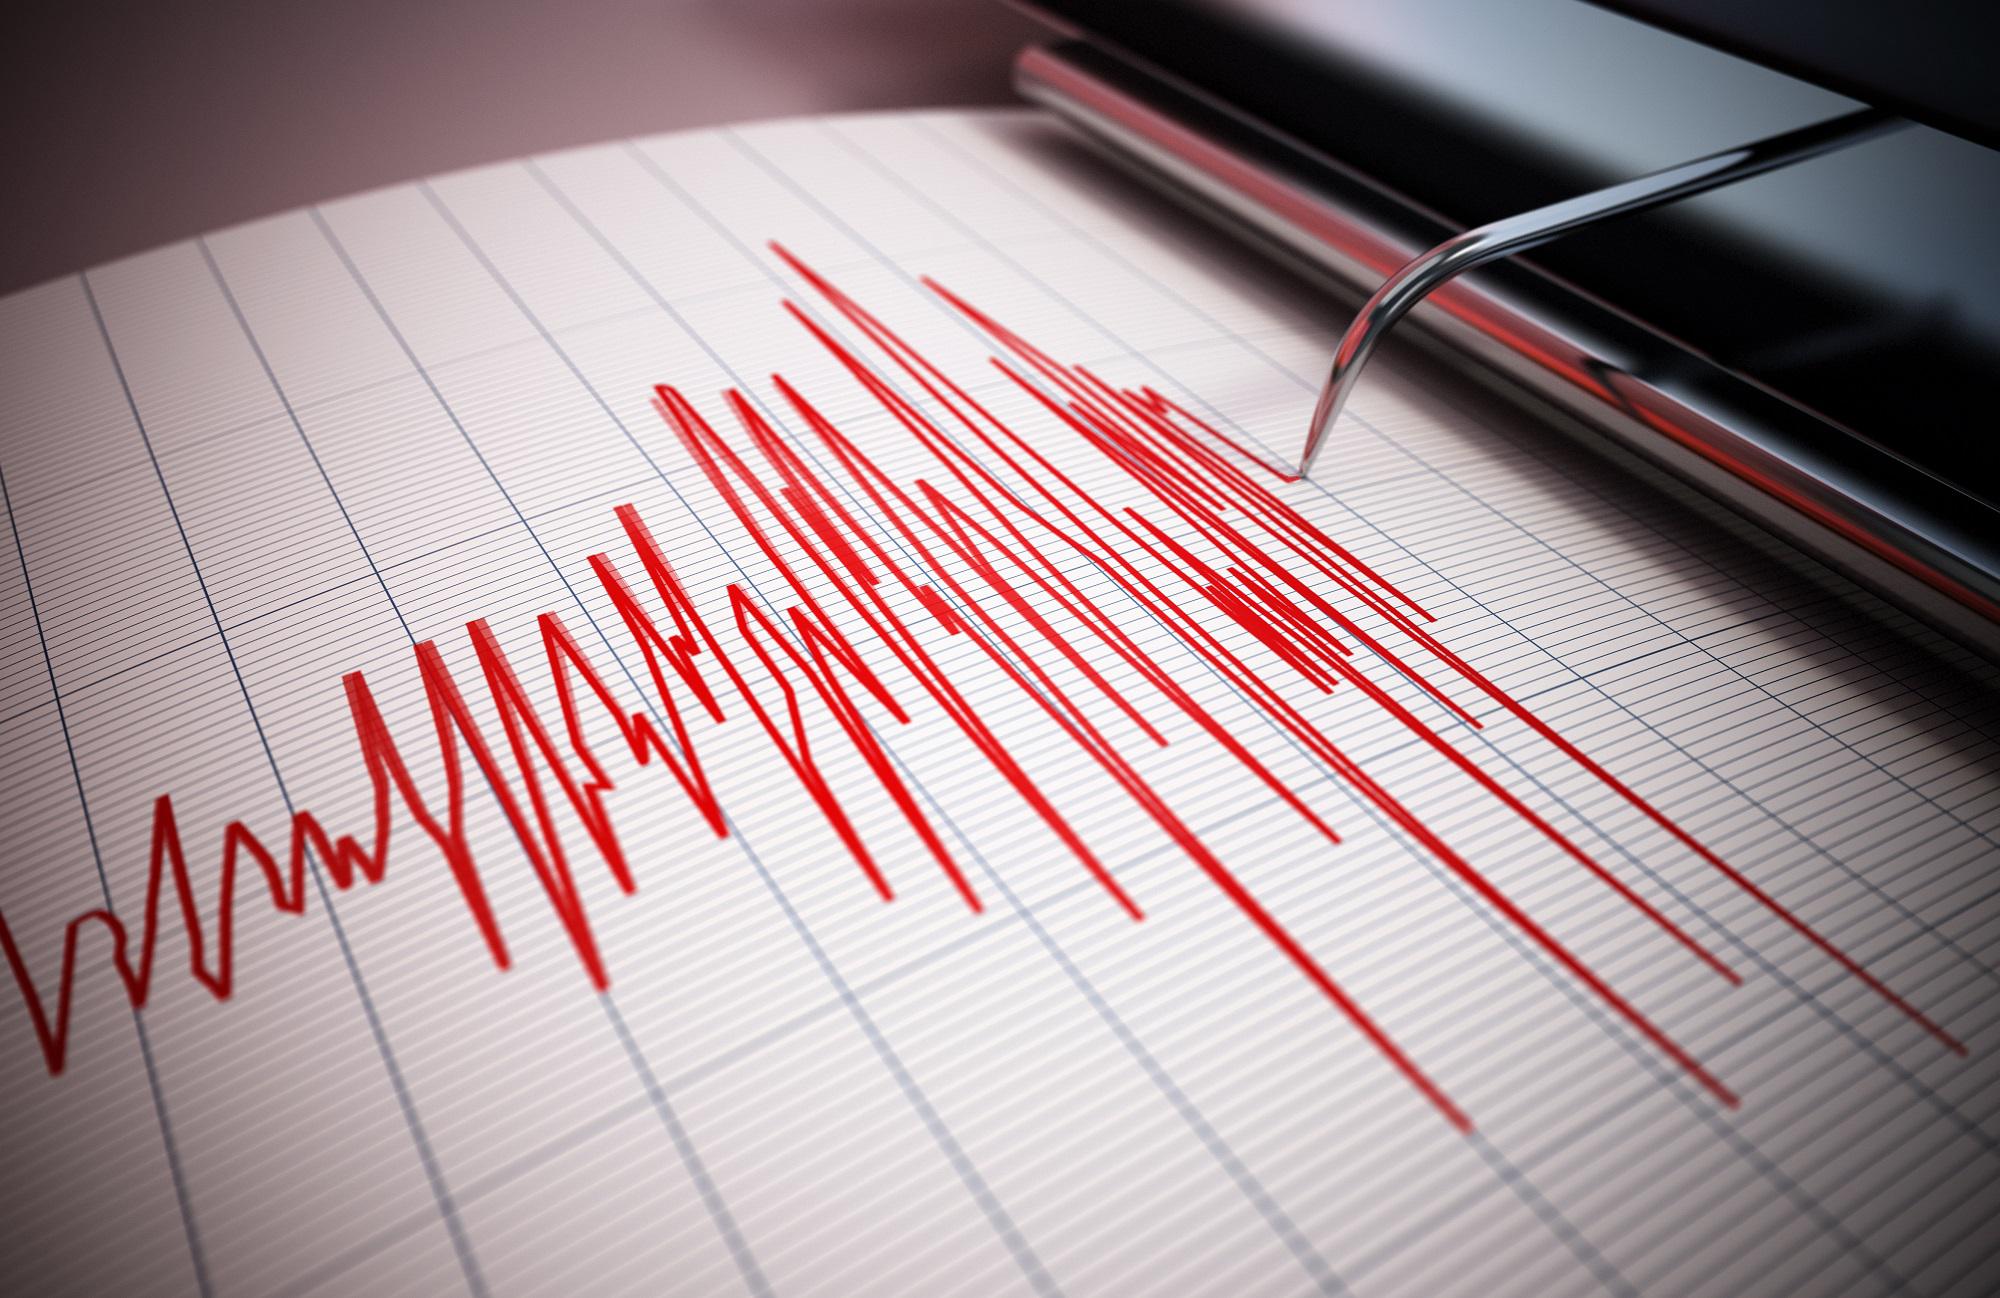 Campi Flegrei nuova scossa di terremoto oggi: sisma di magnitudo 2